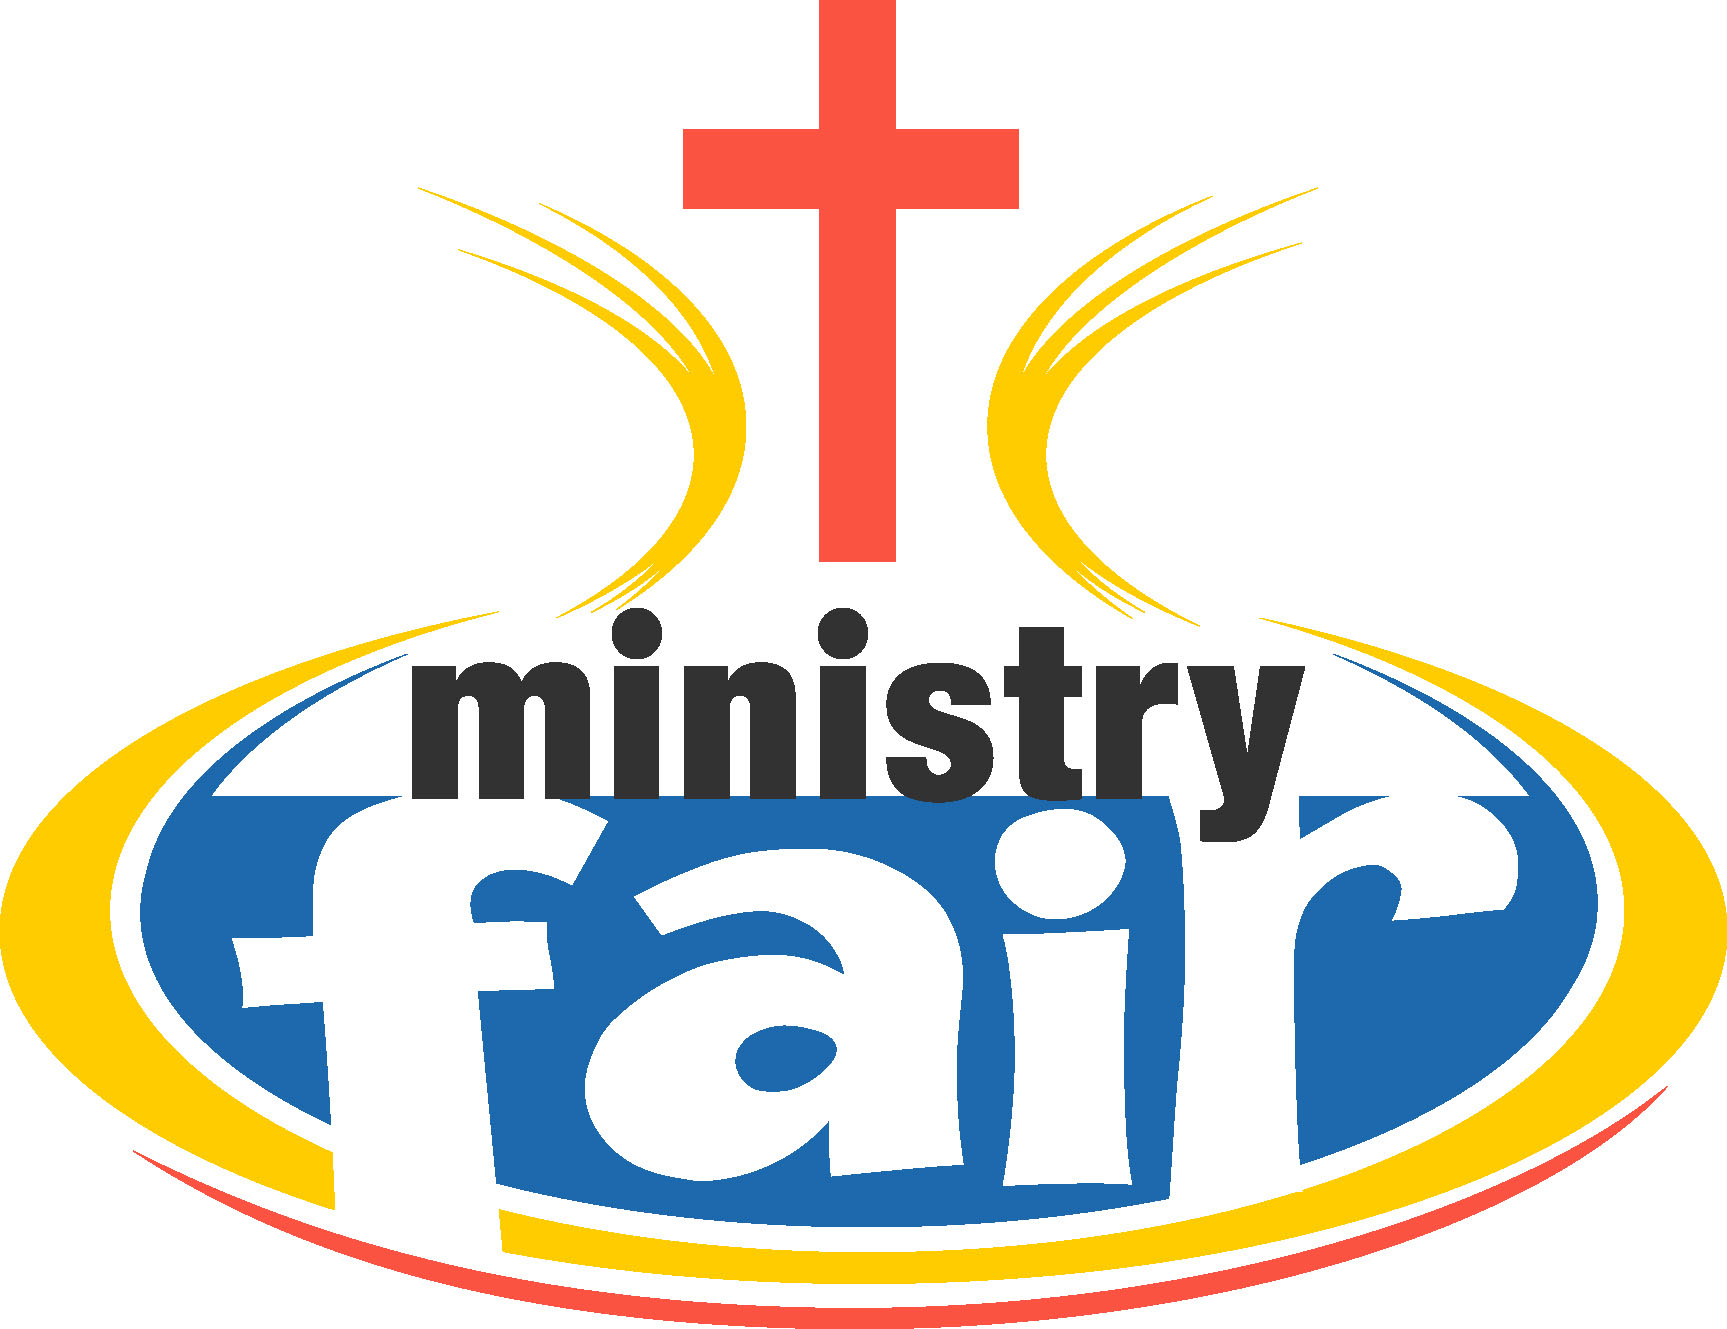 Ministry Fair 2015 Video